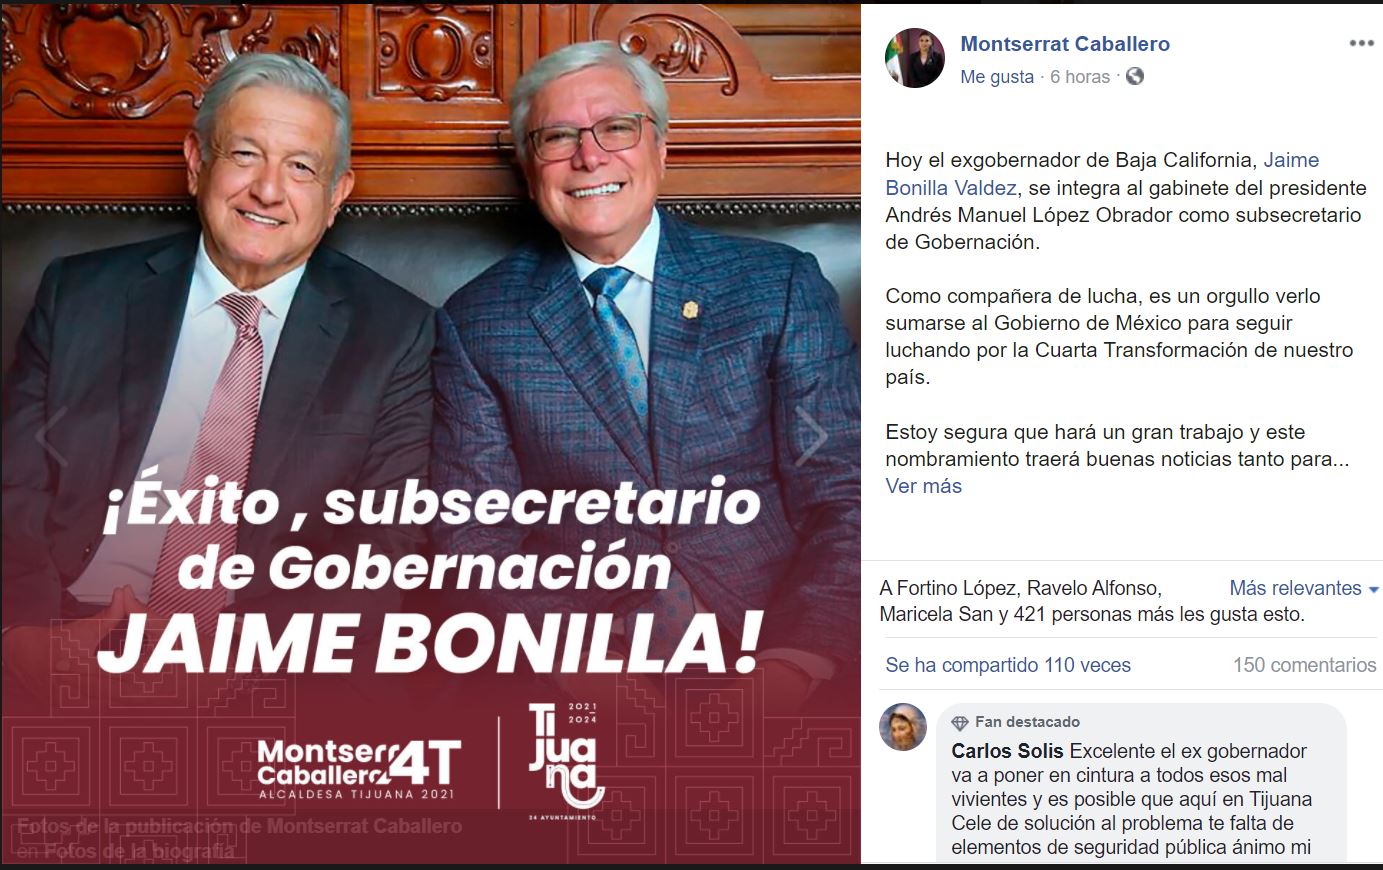 Aquí seguimos, apoyando su proyecto”: Jaime Bonilla se reunió con AMLO y se  perfila como subsecretario de Gobernación - Infobae